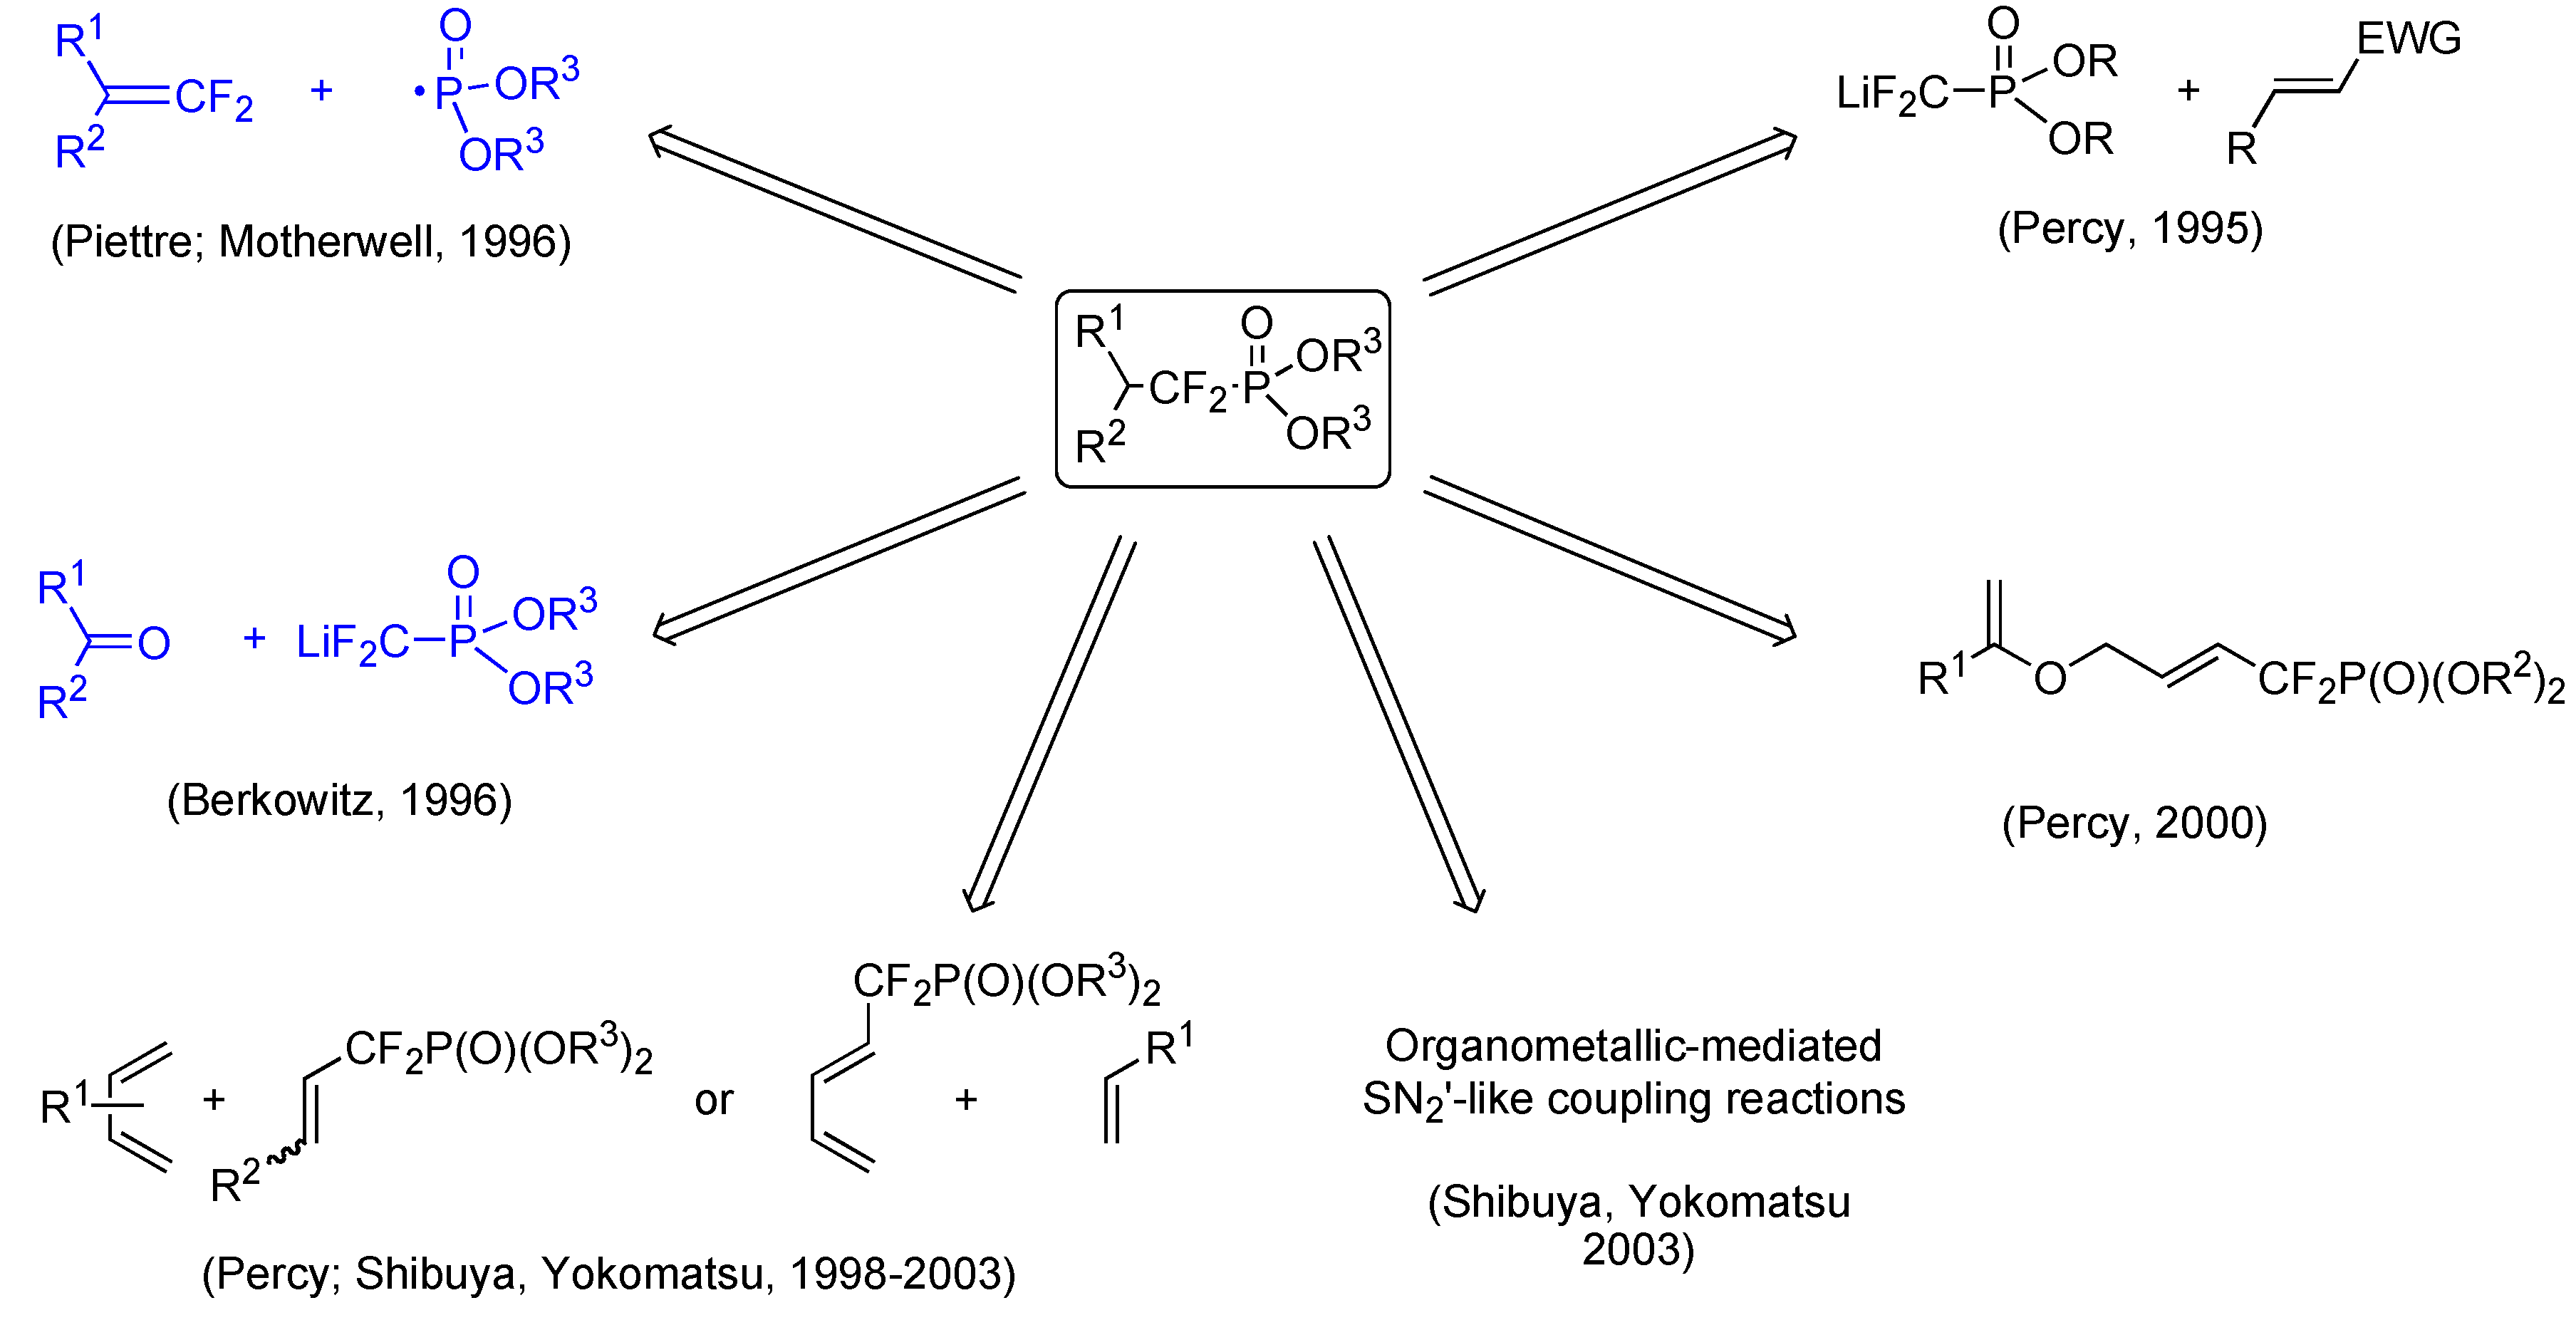 deh x6500bt wiring diagram